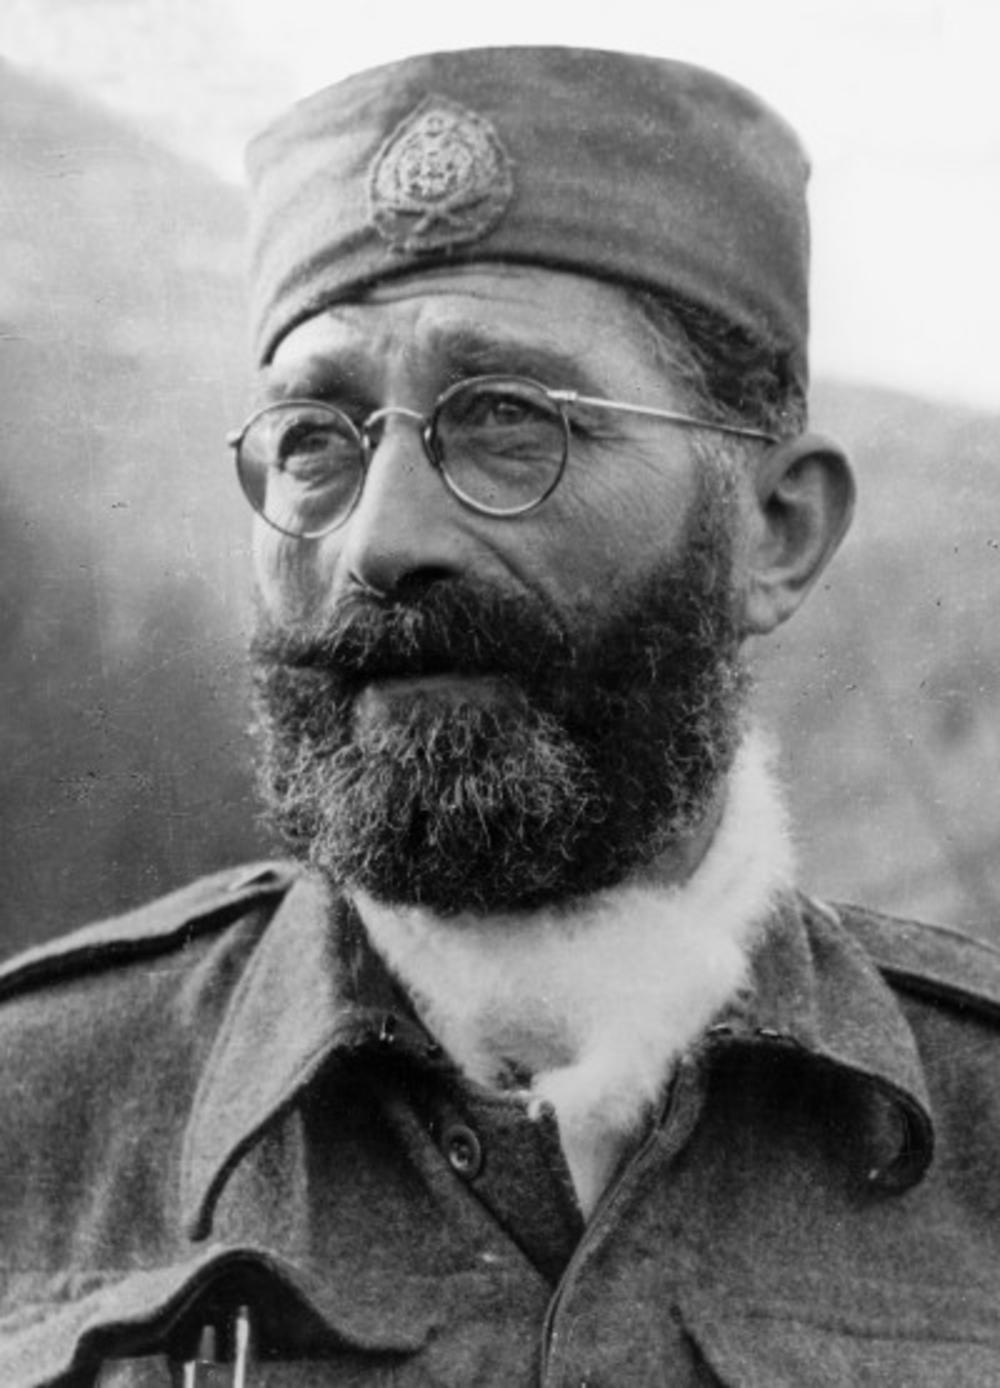 Slika koja je obišla ceo svet -Draža u vojnoj uniformi, na glavi 'petrovka', brada i prepoznatljive naočare   